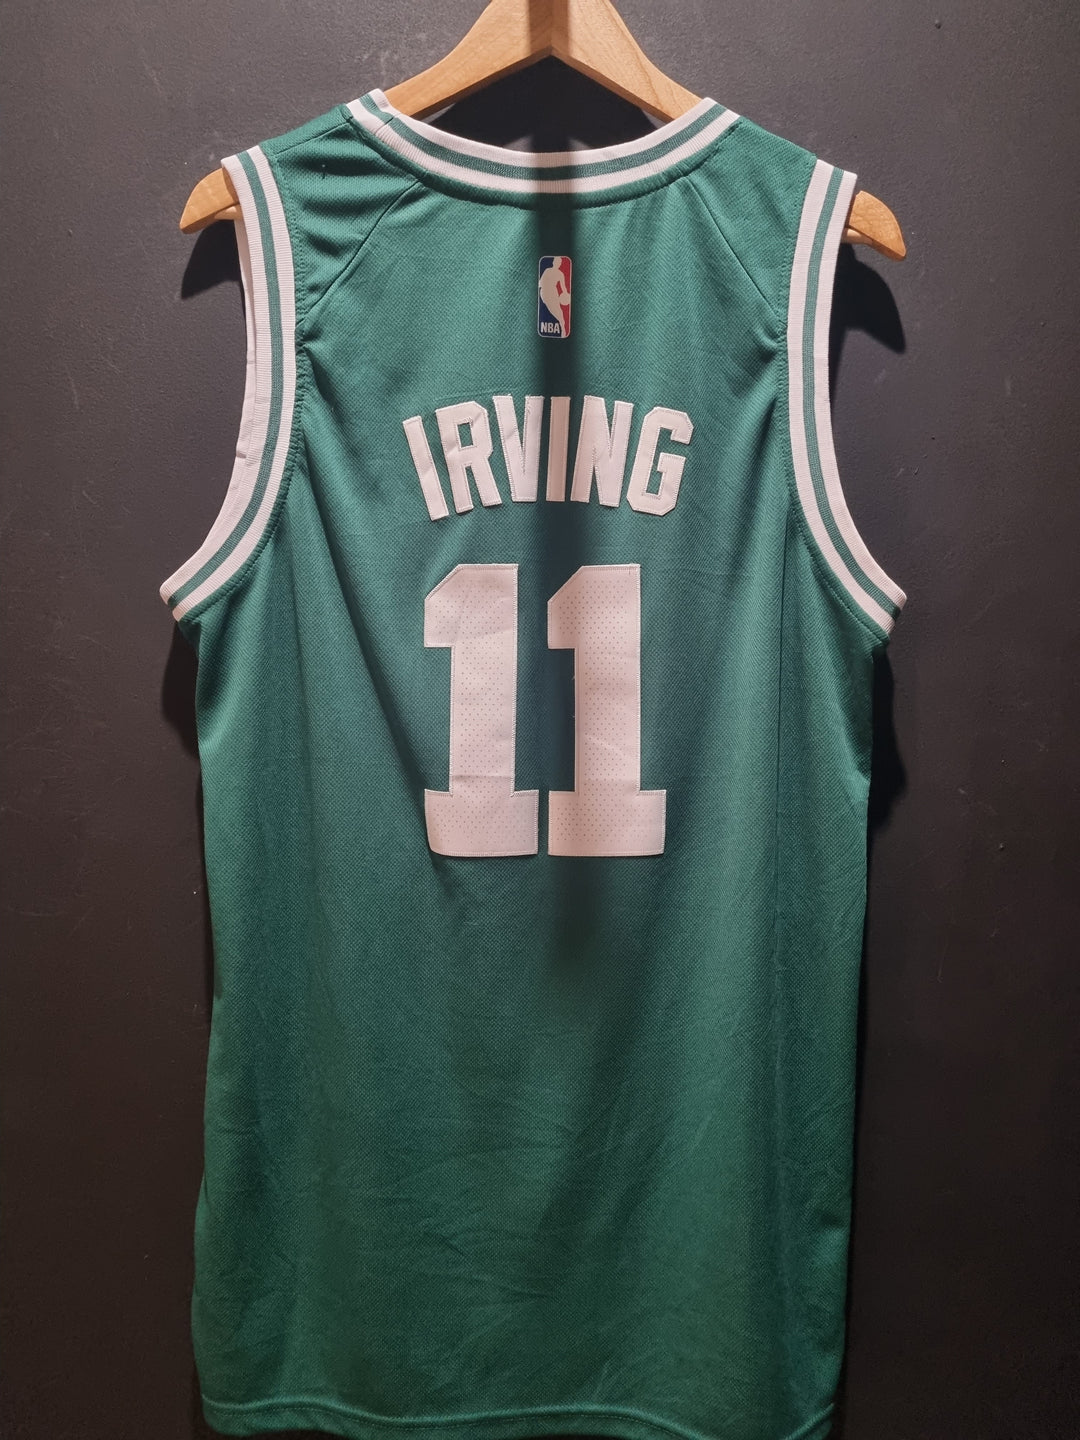 Boston Celtics Irving Swingman Nike 48 / Large